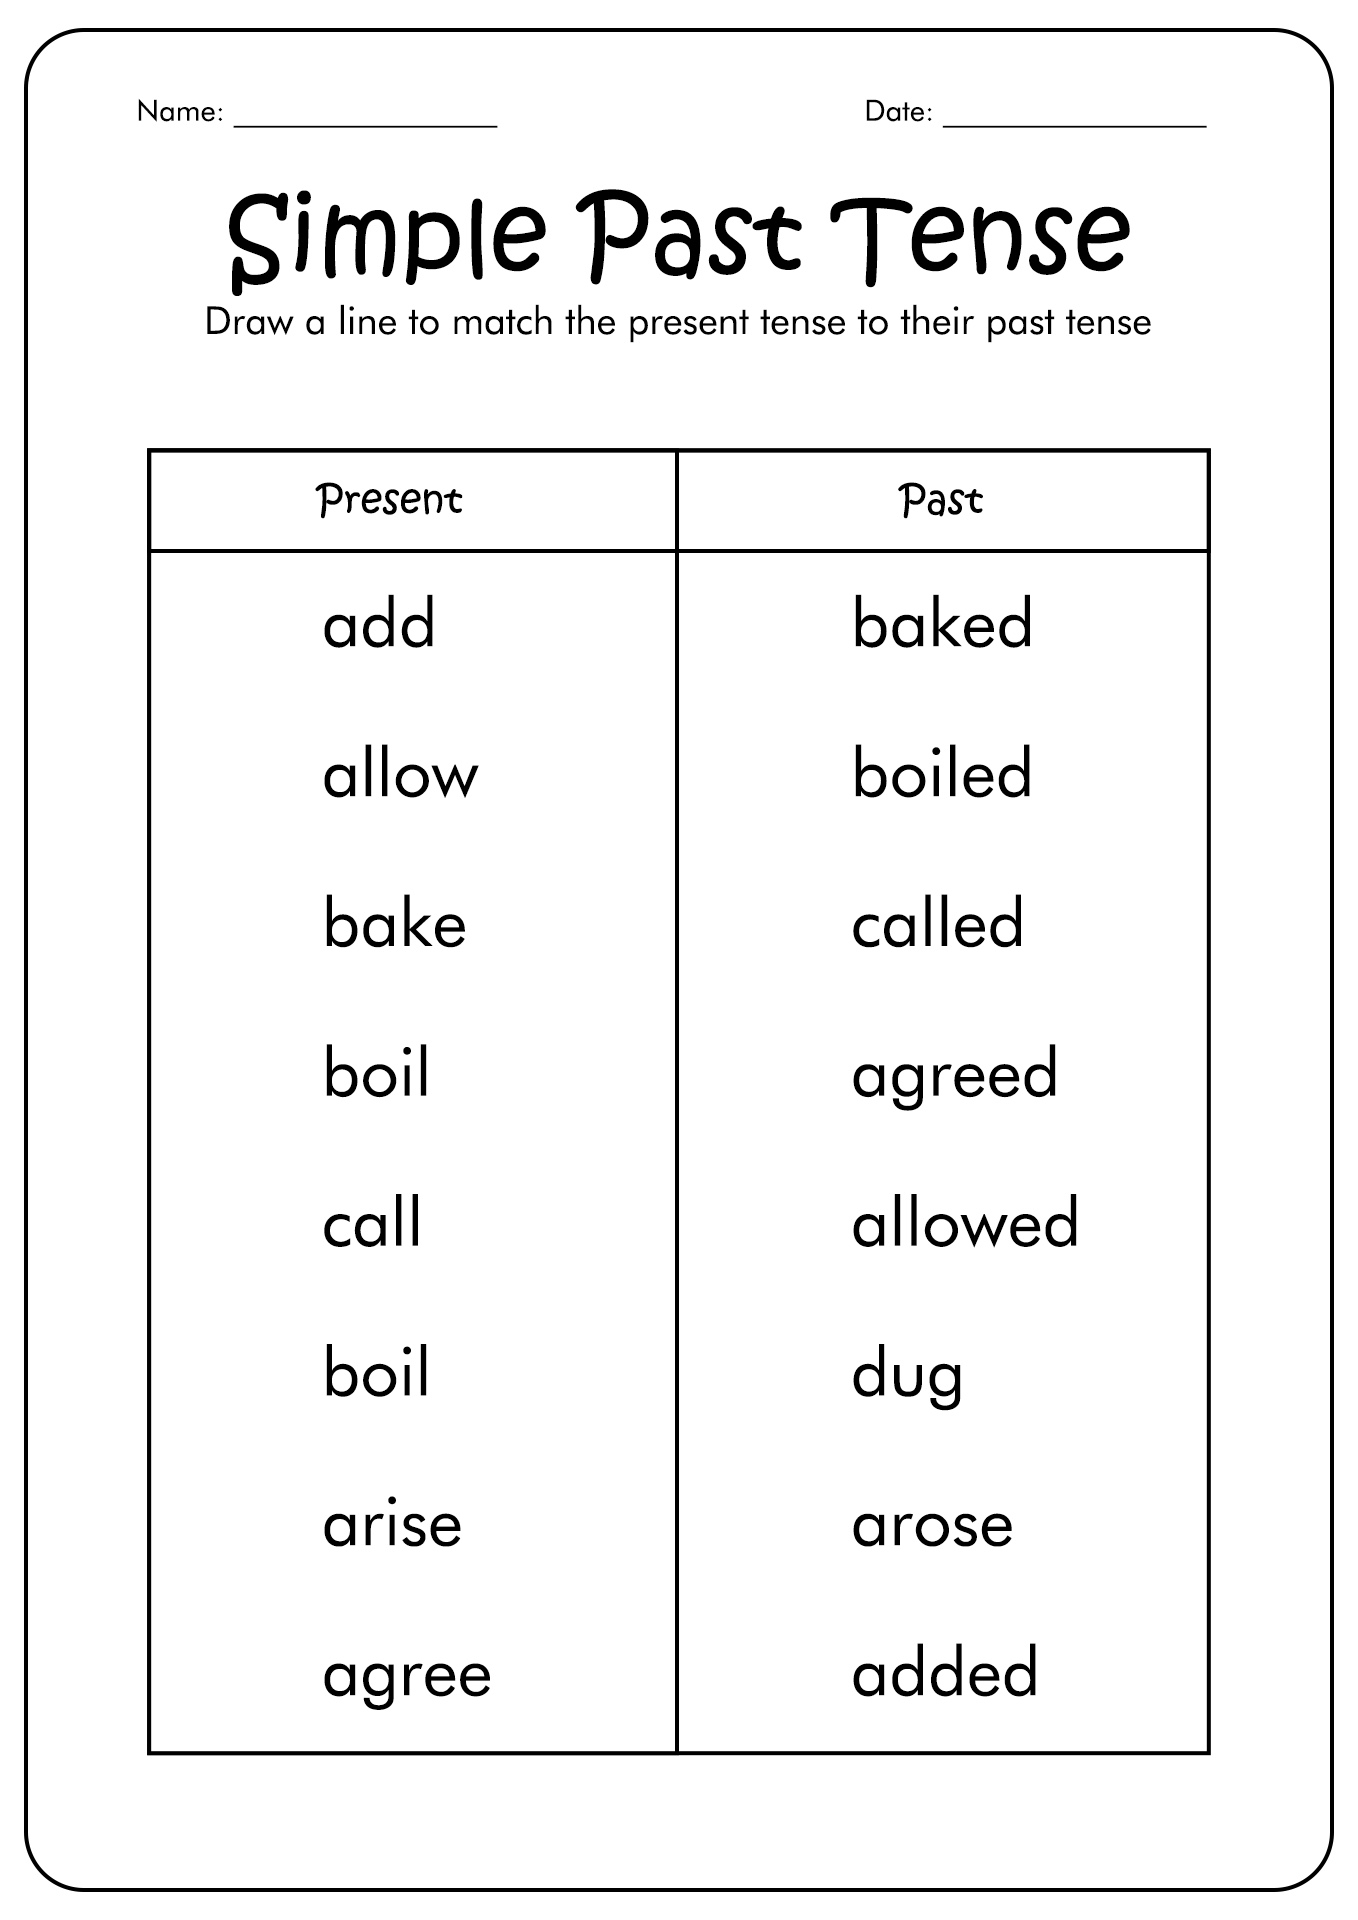 past-tense-verbs-worksheets-99worksheets